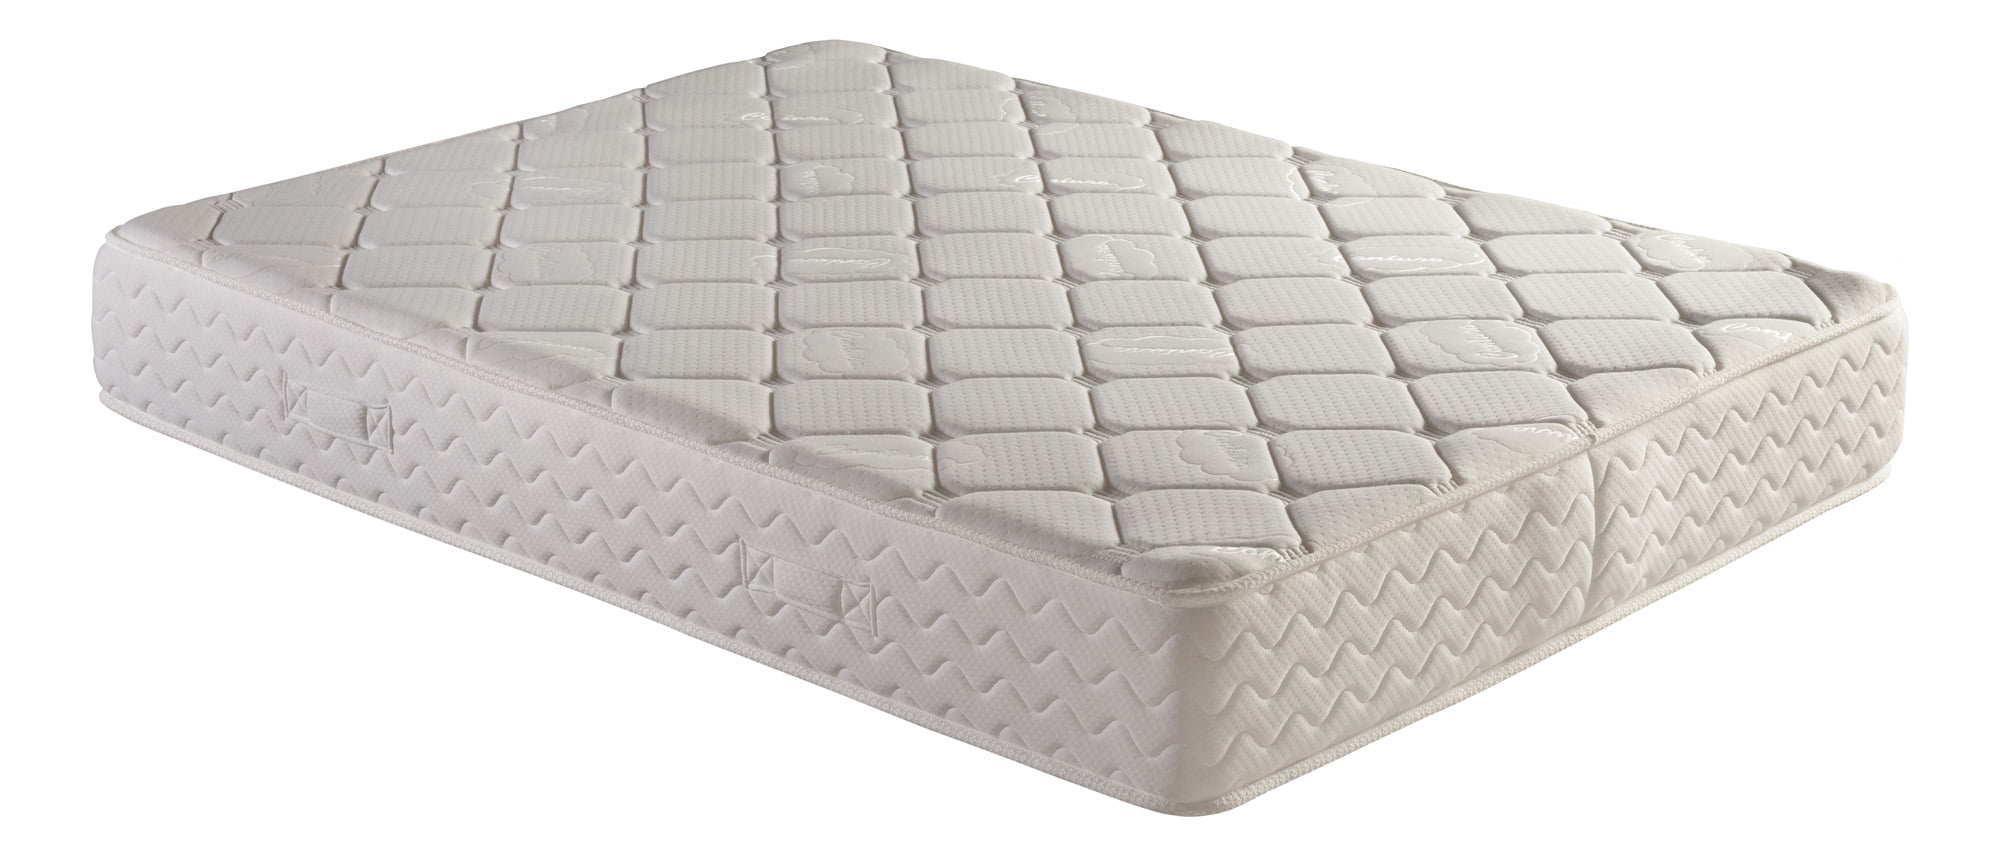 twin bed mattress prices walmart